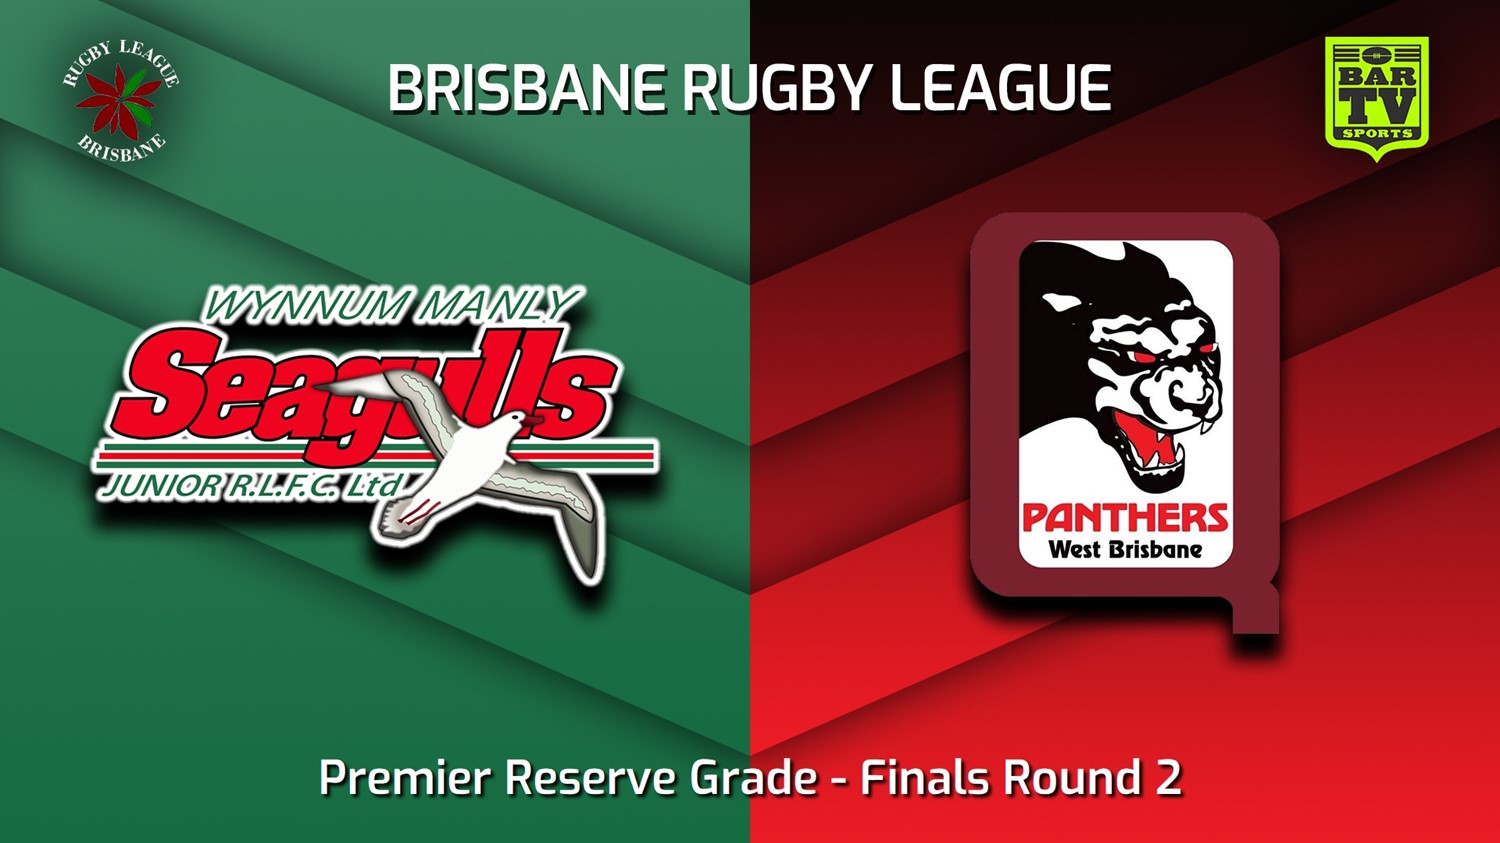 230826-BRL Finals Round 2 - Premier Reserve Grade - Wynnum Manly Seagulls Juniors v West Brisbane Panthers Slate Image